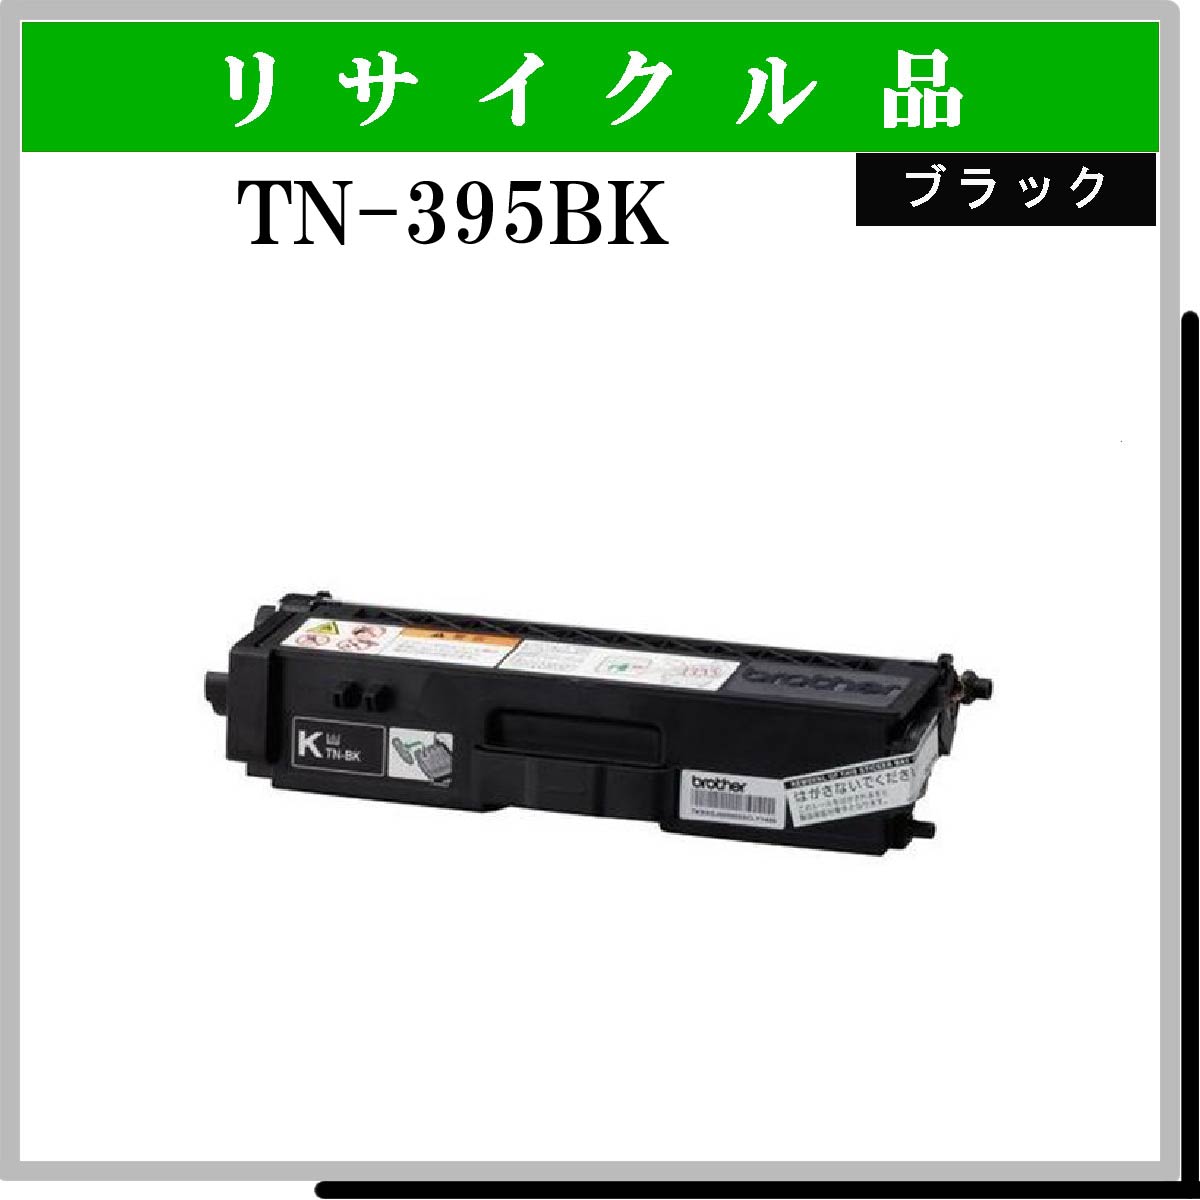 TN-395BK